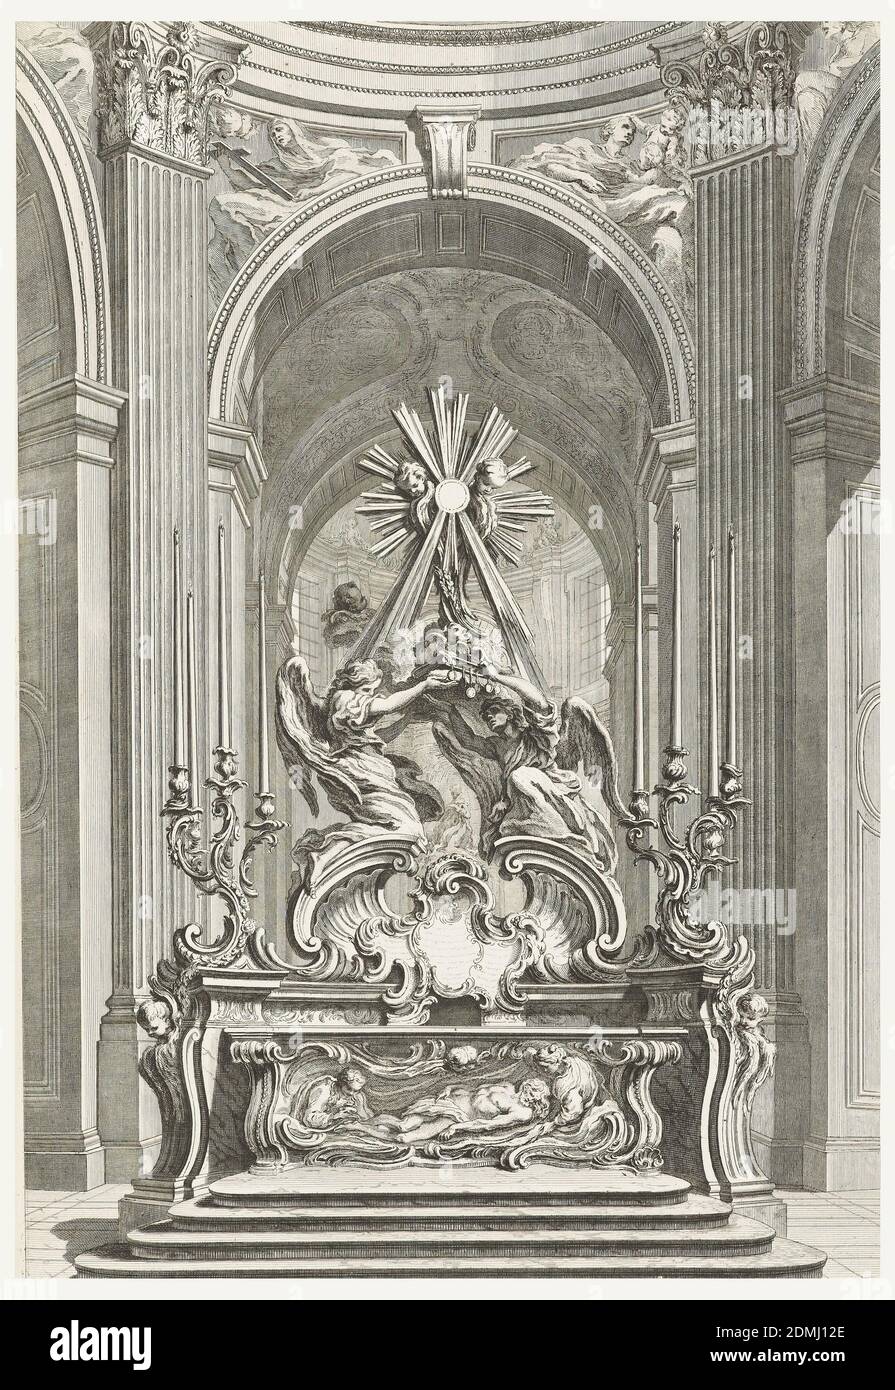 Projet pour le Maitre Autel de l'Eglise de St. Sulpice de Paris (disegno dell'altare maggiore della Chiesa di St. Sulpice di Parigi), Plate 109, in oeuvres de Juste-Aurèle Meissonnier (opere di Juste-Aurèle Meissonnier), Juste-Aurèle Meissonnier, francese, n. Italia, 1695–1750, Gabriel Huquier, francese, 1695–1772, Gabriel Huquier, francese, 1695–1772, incisione su carta bianca, scale che portano all'altare decorato con immagine di figura simile a Cristo; con figura femminile a destra e figura maschile a sinistra. Sopra, è possibile ammirare due figure che sostengono un libro; sopra di esse, una grande croce con putti e raggi solari Foto Stock